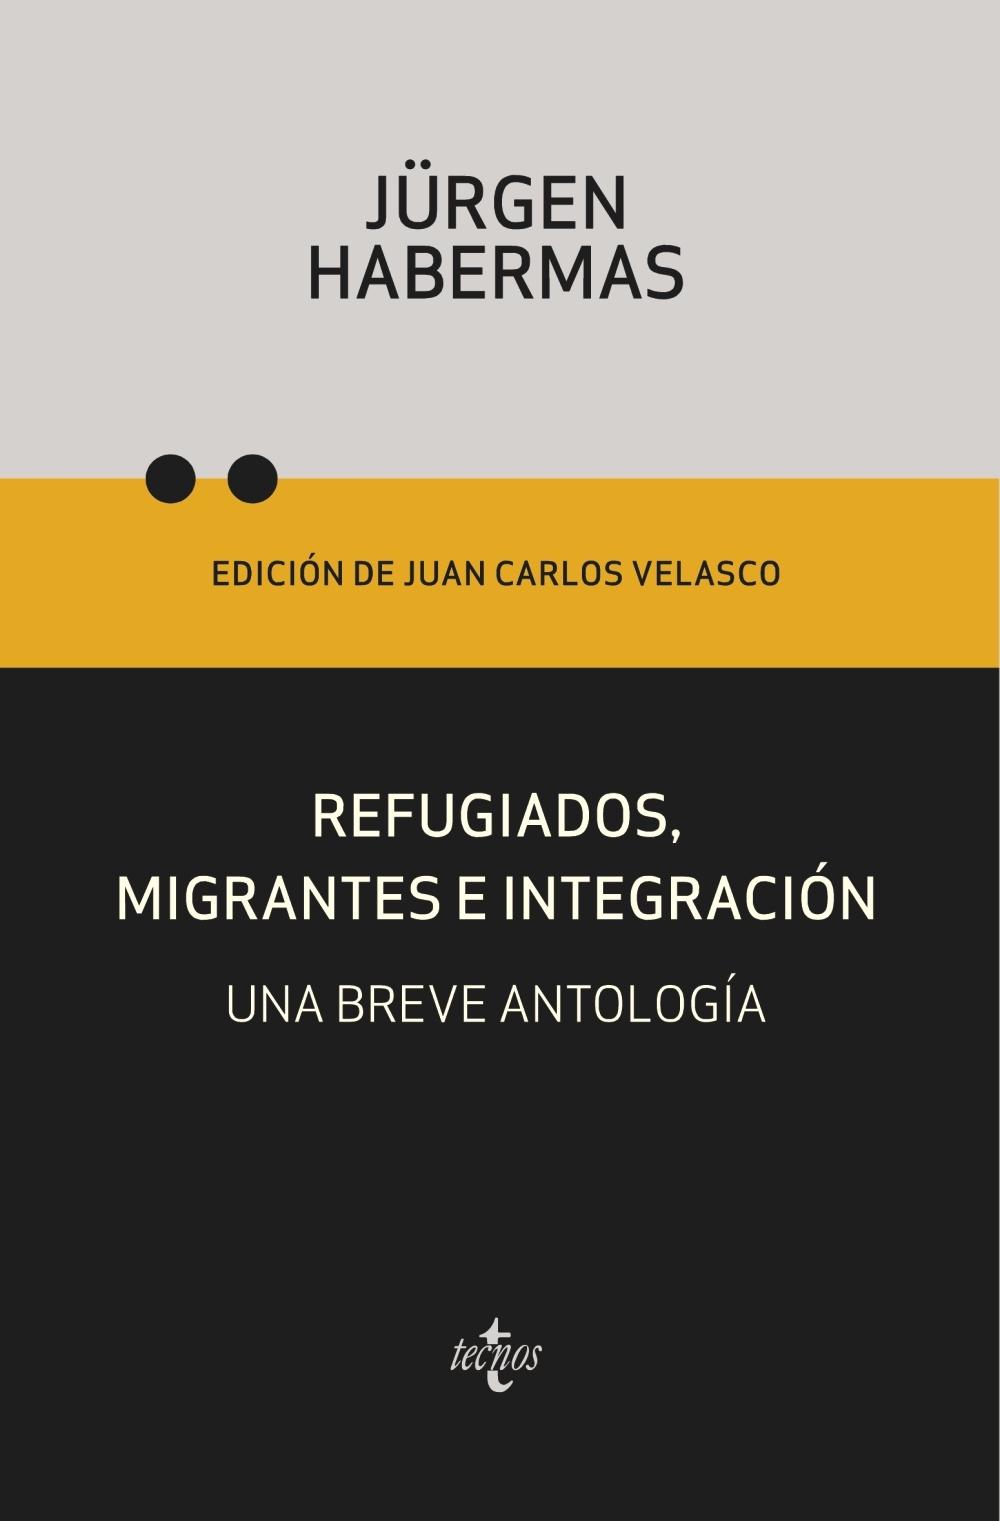 Refugiados, migrantes e integración "Una breve antología". 